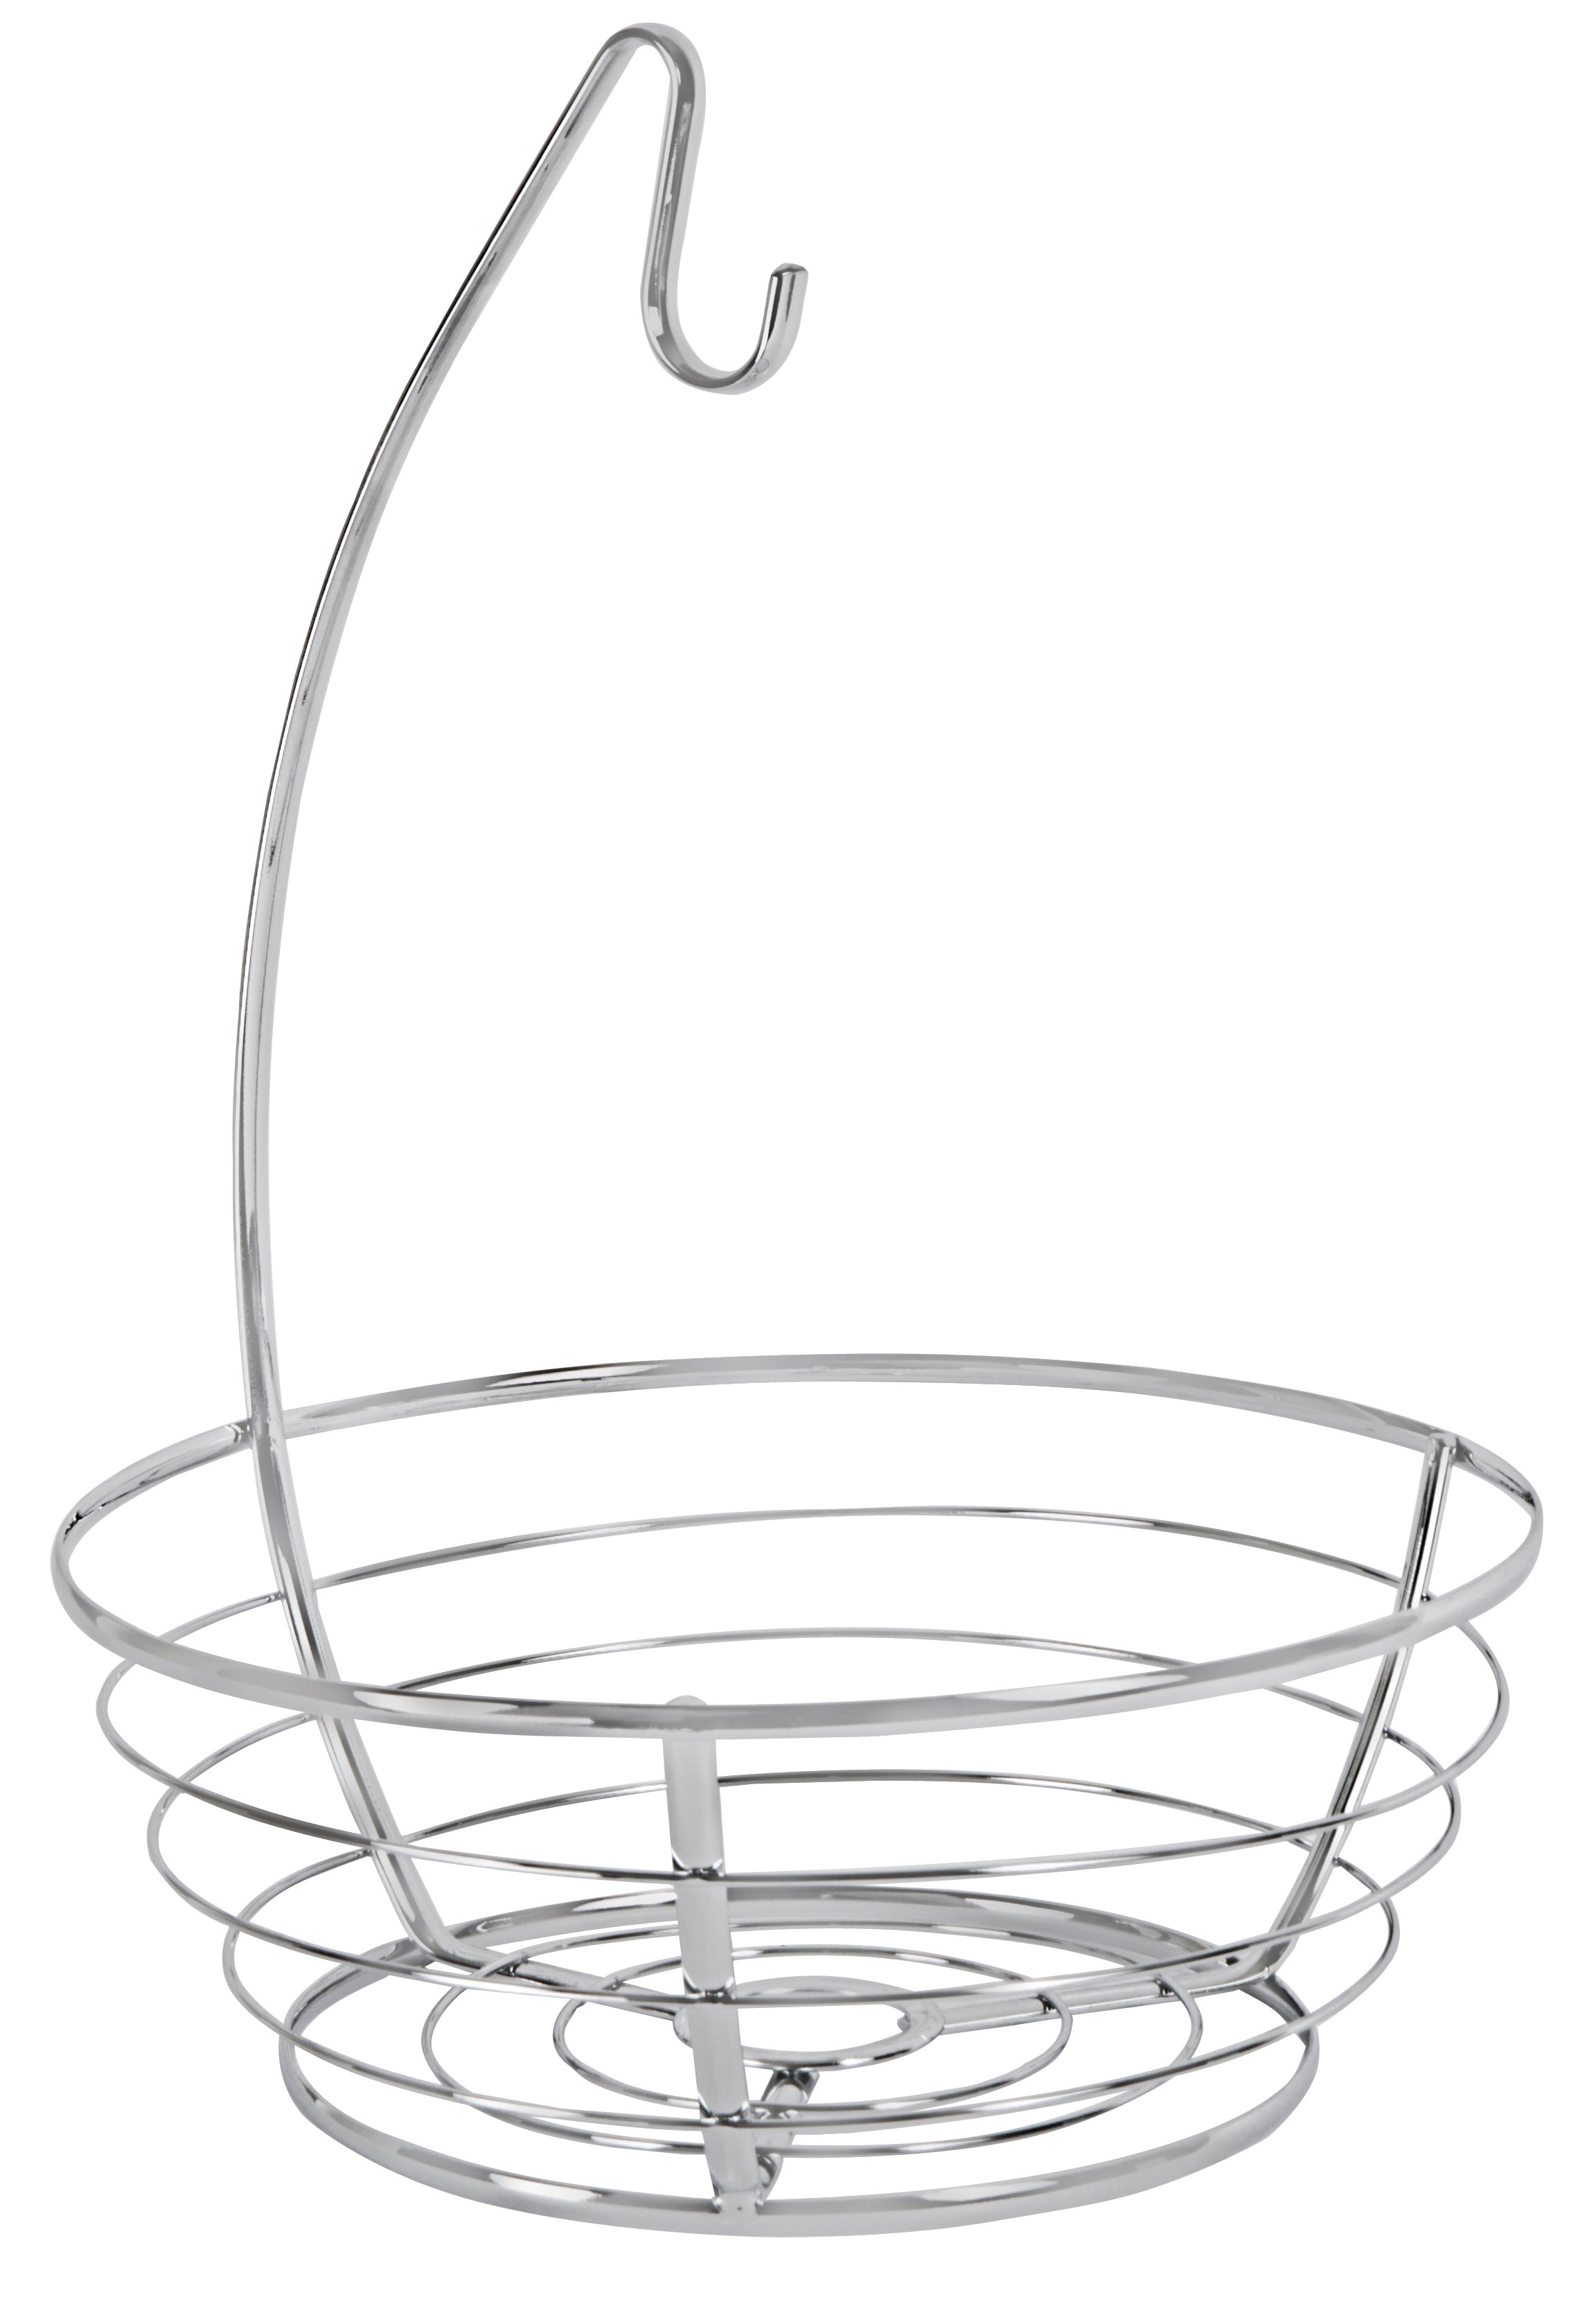 Banana and Fruit Basket Bowl Hanger Holder Stand - Smart Design® 1